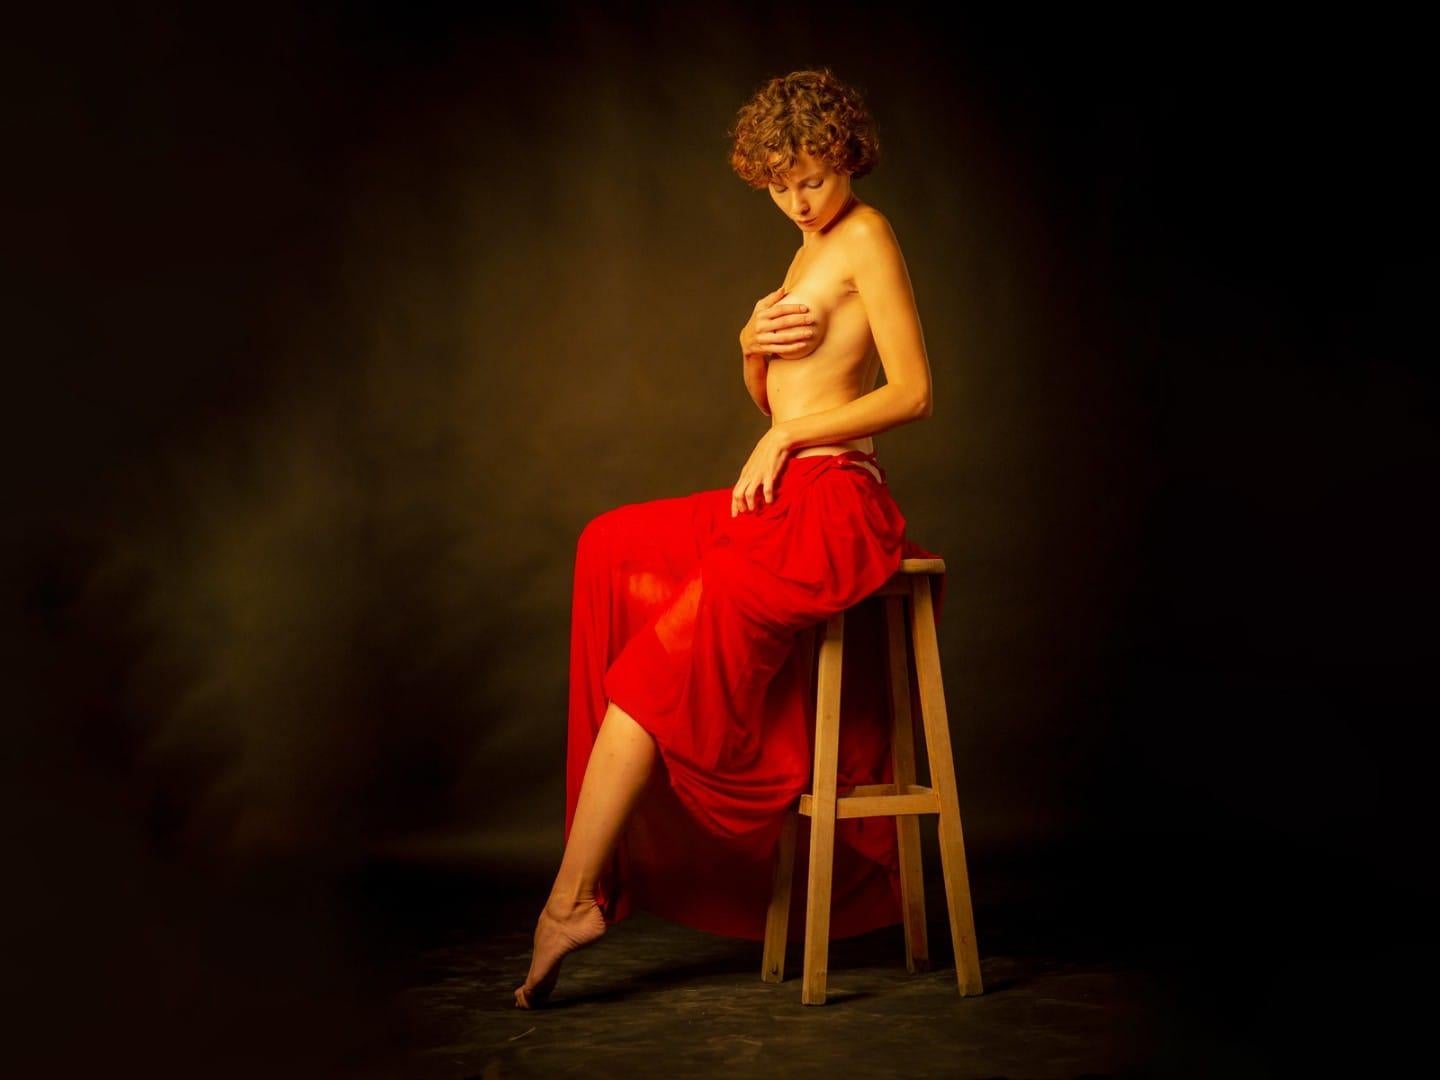 Grande photographie figurative colorée d'une femme assise - Modèle nu féminin  Par Shuki